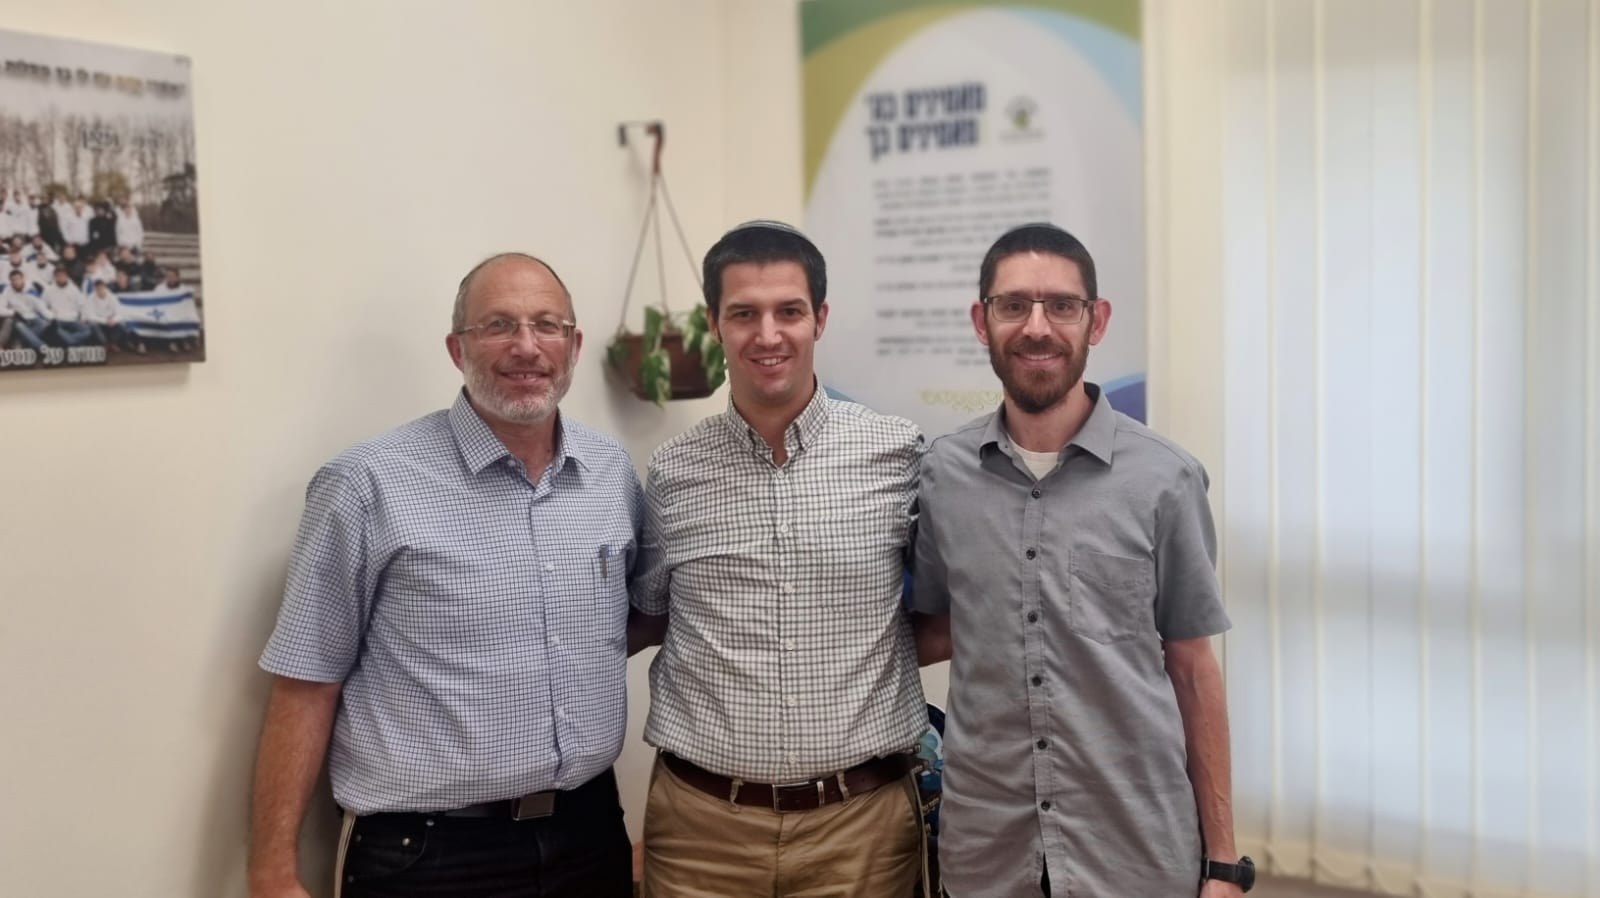 בתמונה מימין לשמאל: הרב עקיבא פדר, הרב ניצן ברגר והרב אמיר ספוקויני. קרדיט צילום: יאיר הרמן